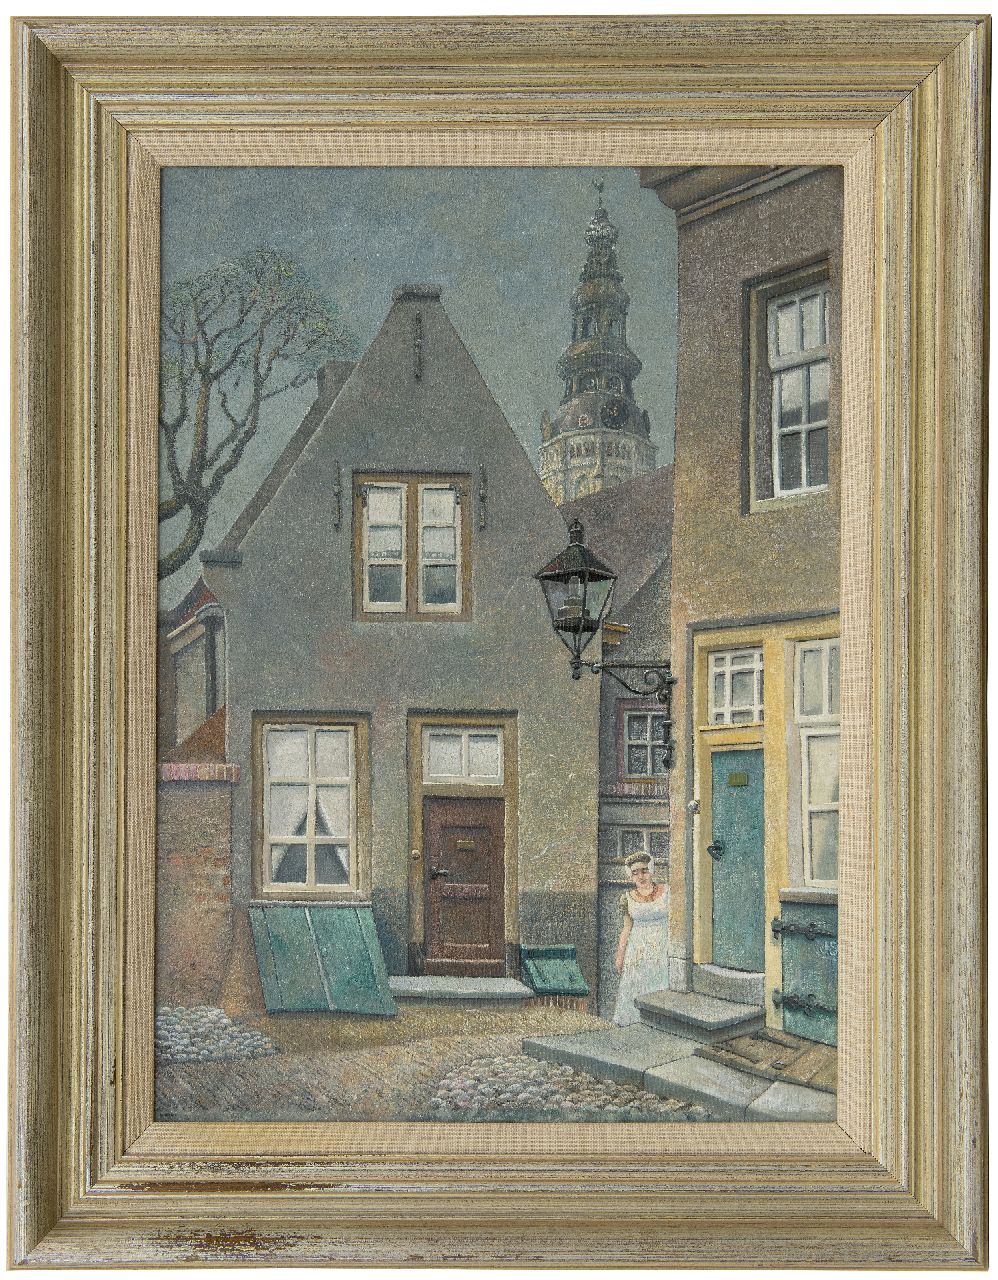 Strube J.H.  | Johan Hendrik 'Jan' Strube | Schilderijen te koop aangeboden | De vismarkt in Middelburg met de Nieuwe Kerk, olieverf op doek 55,8 x 39,8 cm, gesigneerd rechtsonder met initialen